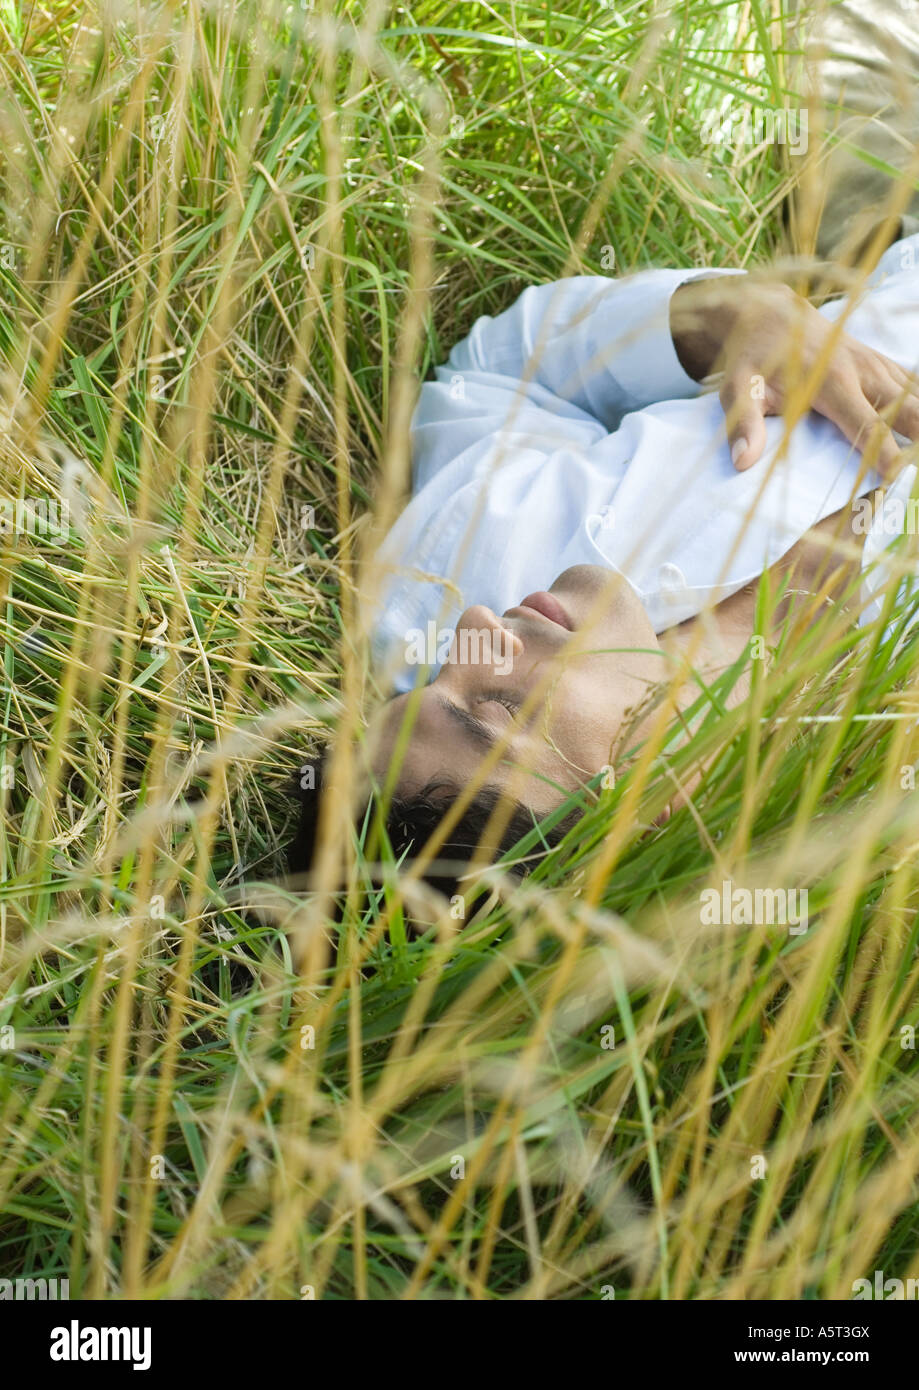 Homme couché dans l'herbe haute, les yeux fermés Photo Stock - Alamy